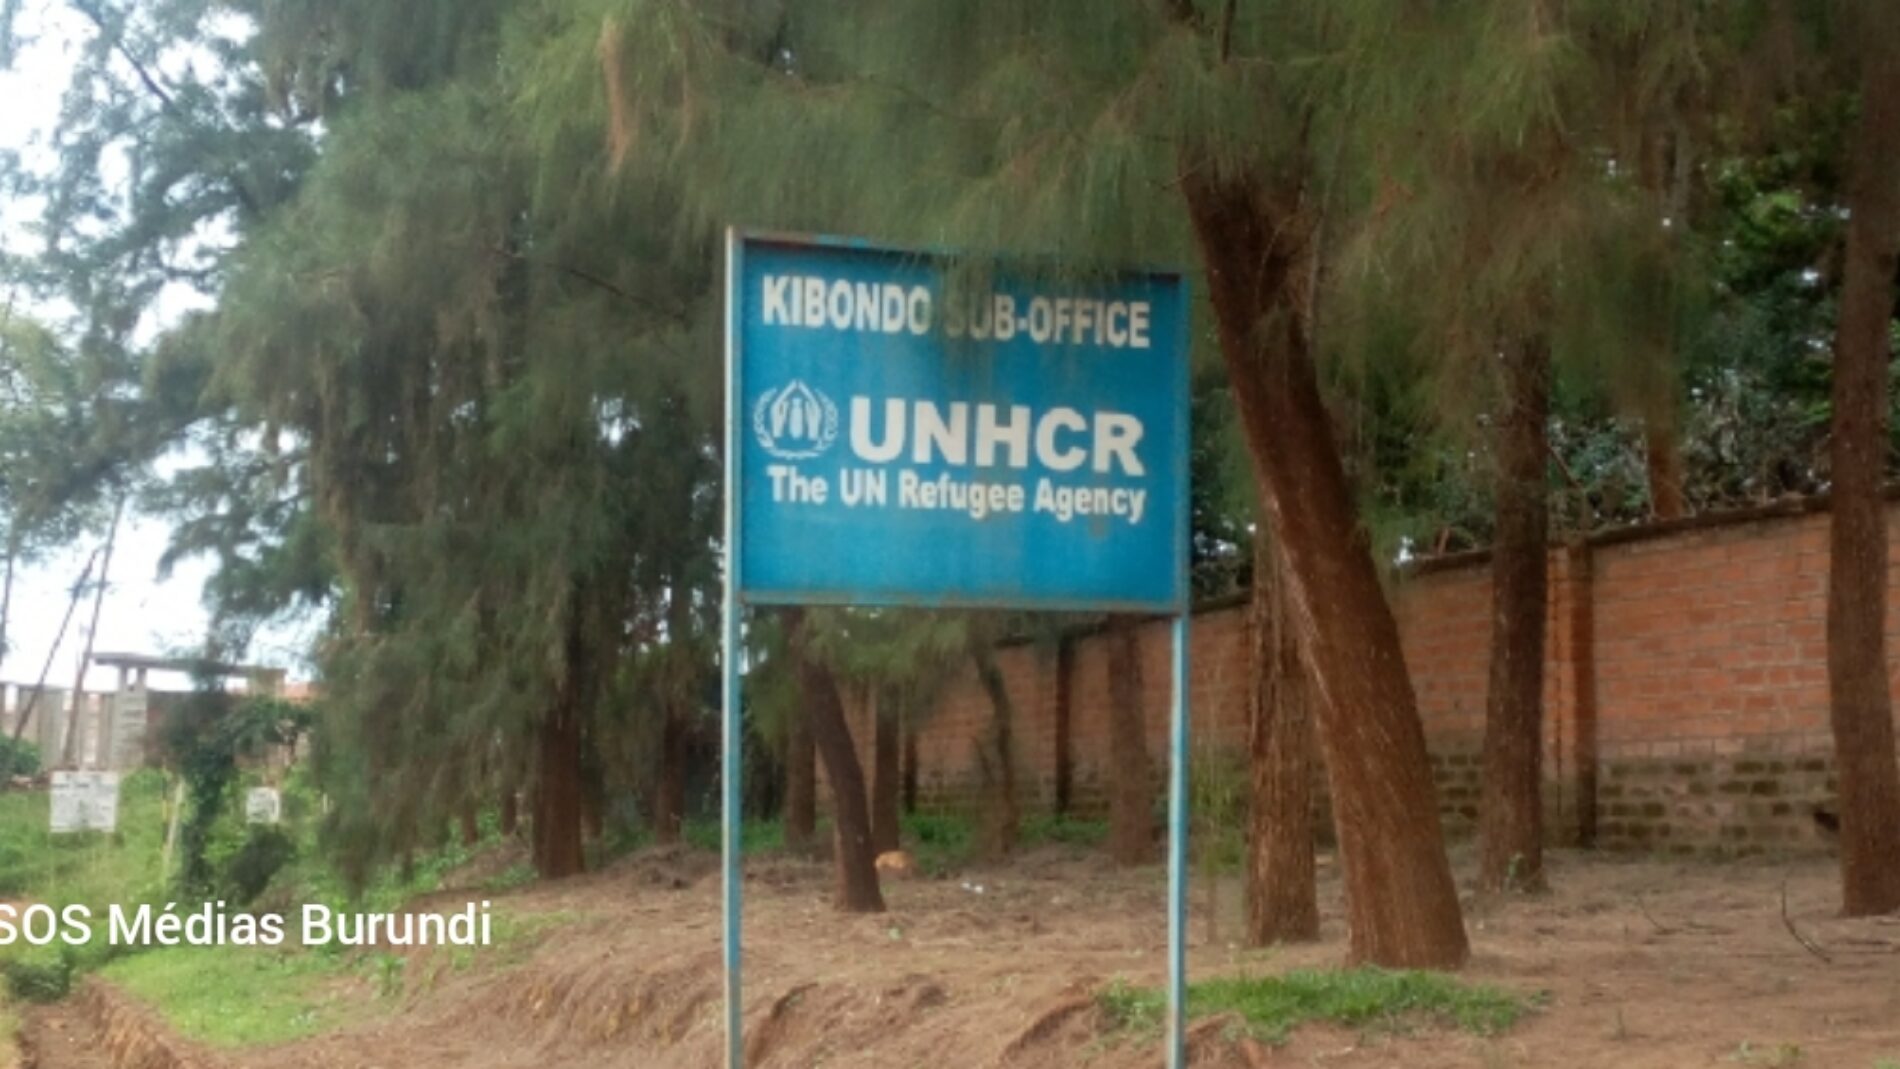 Tanzanie : le HCR demande aux autorités tanzaniennes de cesser le harcèlement contre les réfugiés burundais